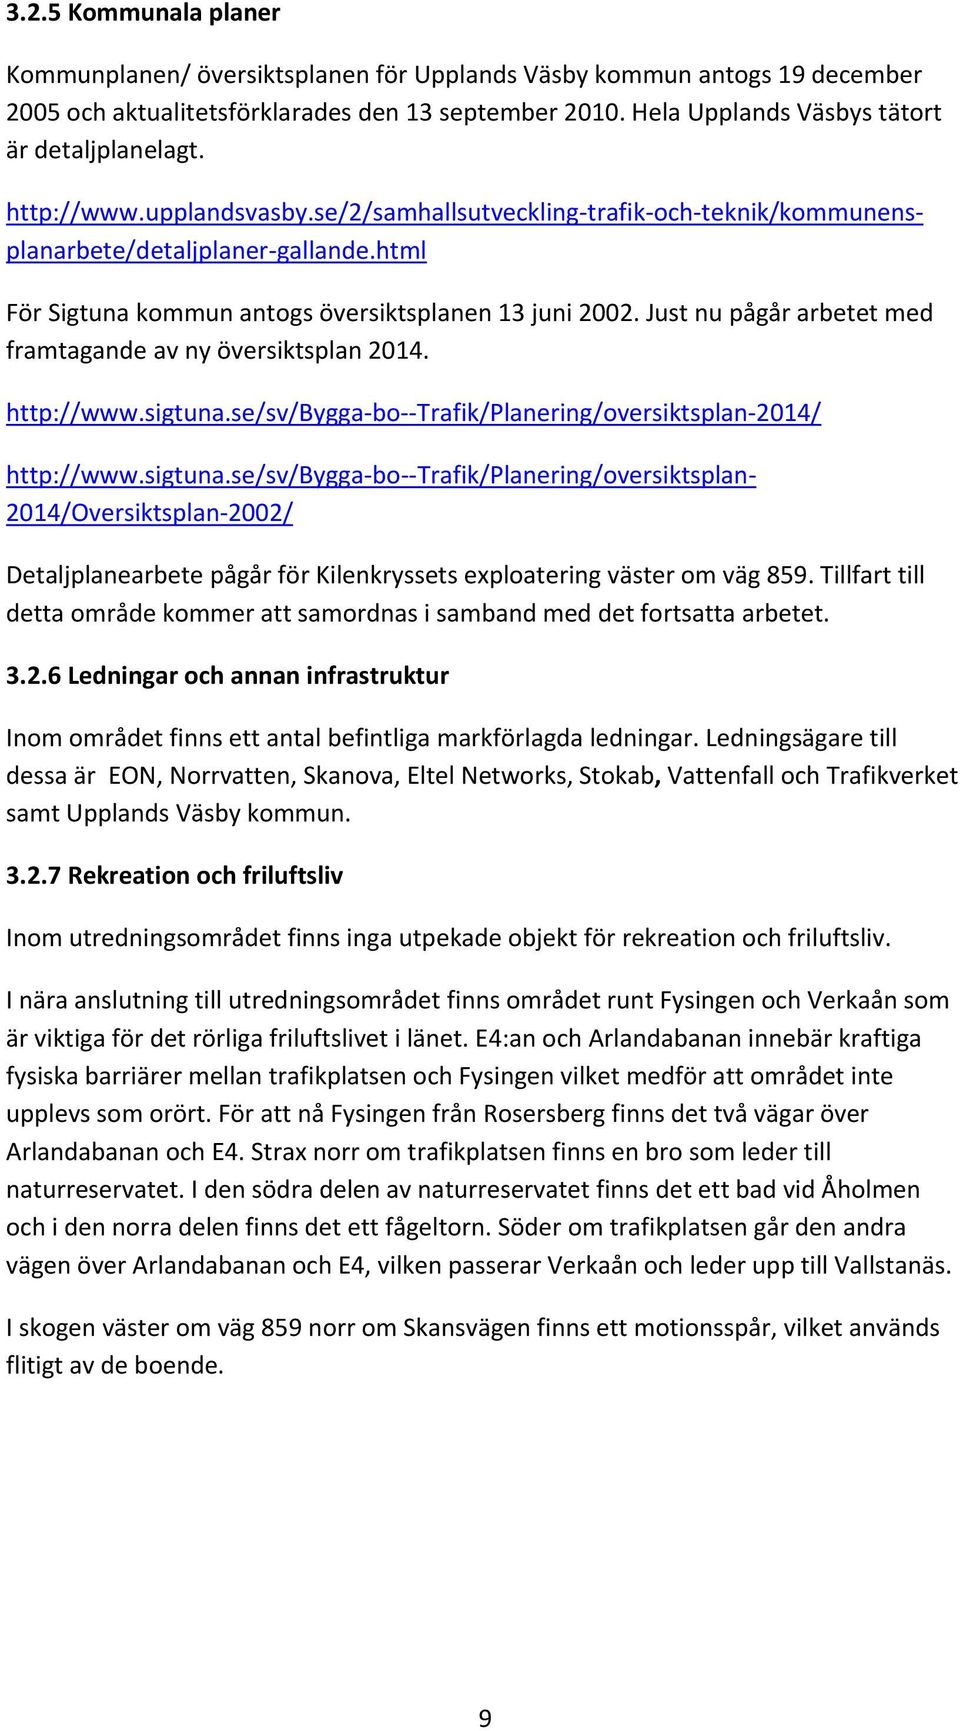 se/sv/bygga bo Trafik/Planering/oversiktsplan 2014/ http://www.upplandsvasby.se/2/samhallsutveckling trafik och teknik/kommunensplanarbete/detaljplaner gallande.html http://www.sigtuna.